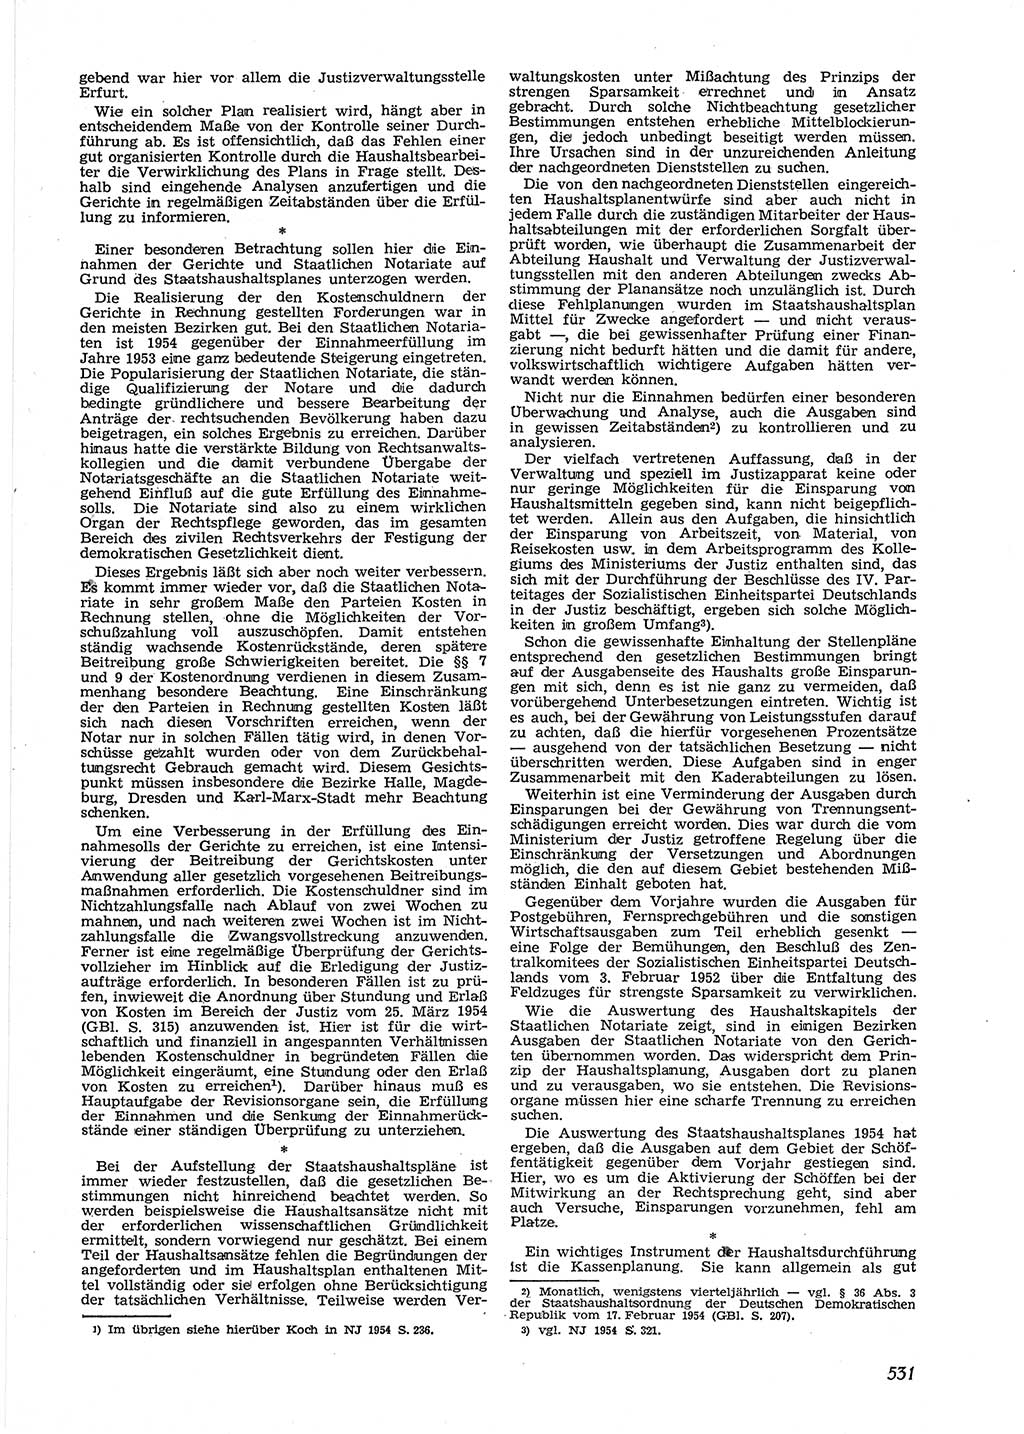 Neue Justiz (NJ), Zeitschrift für Recht und Rechtswissenschaft [Deutsche Demokratische Republik (DDR)], 9. Jahrgang 1955, Seite 531 (NJ DDR 1955, S. 531)